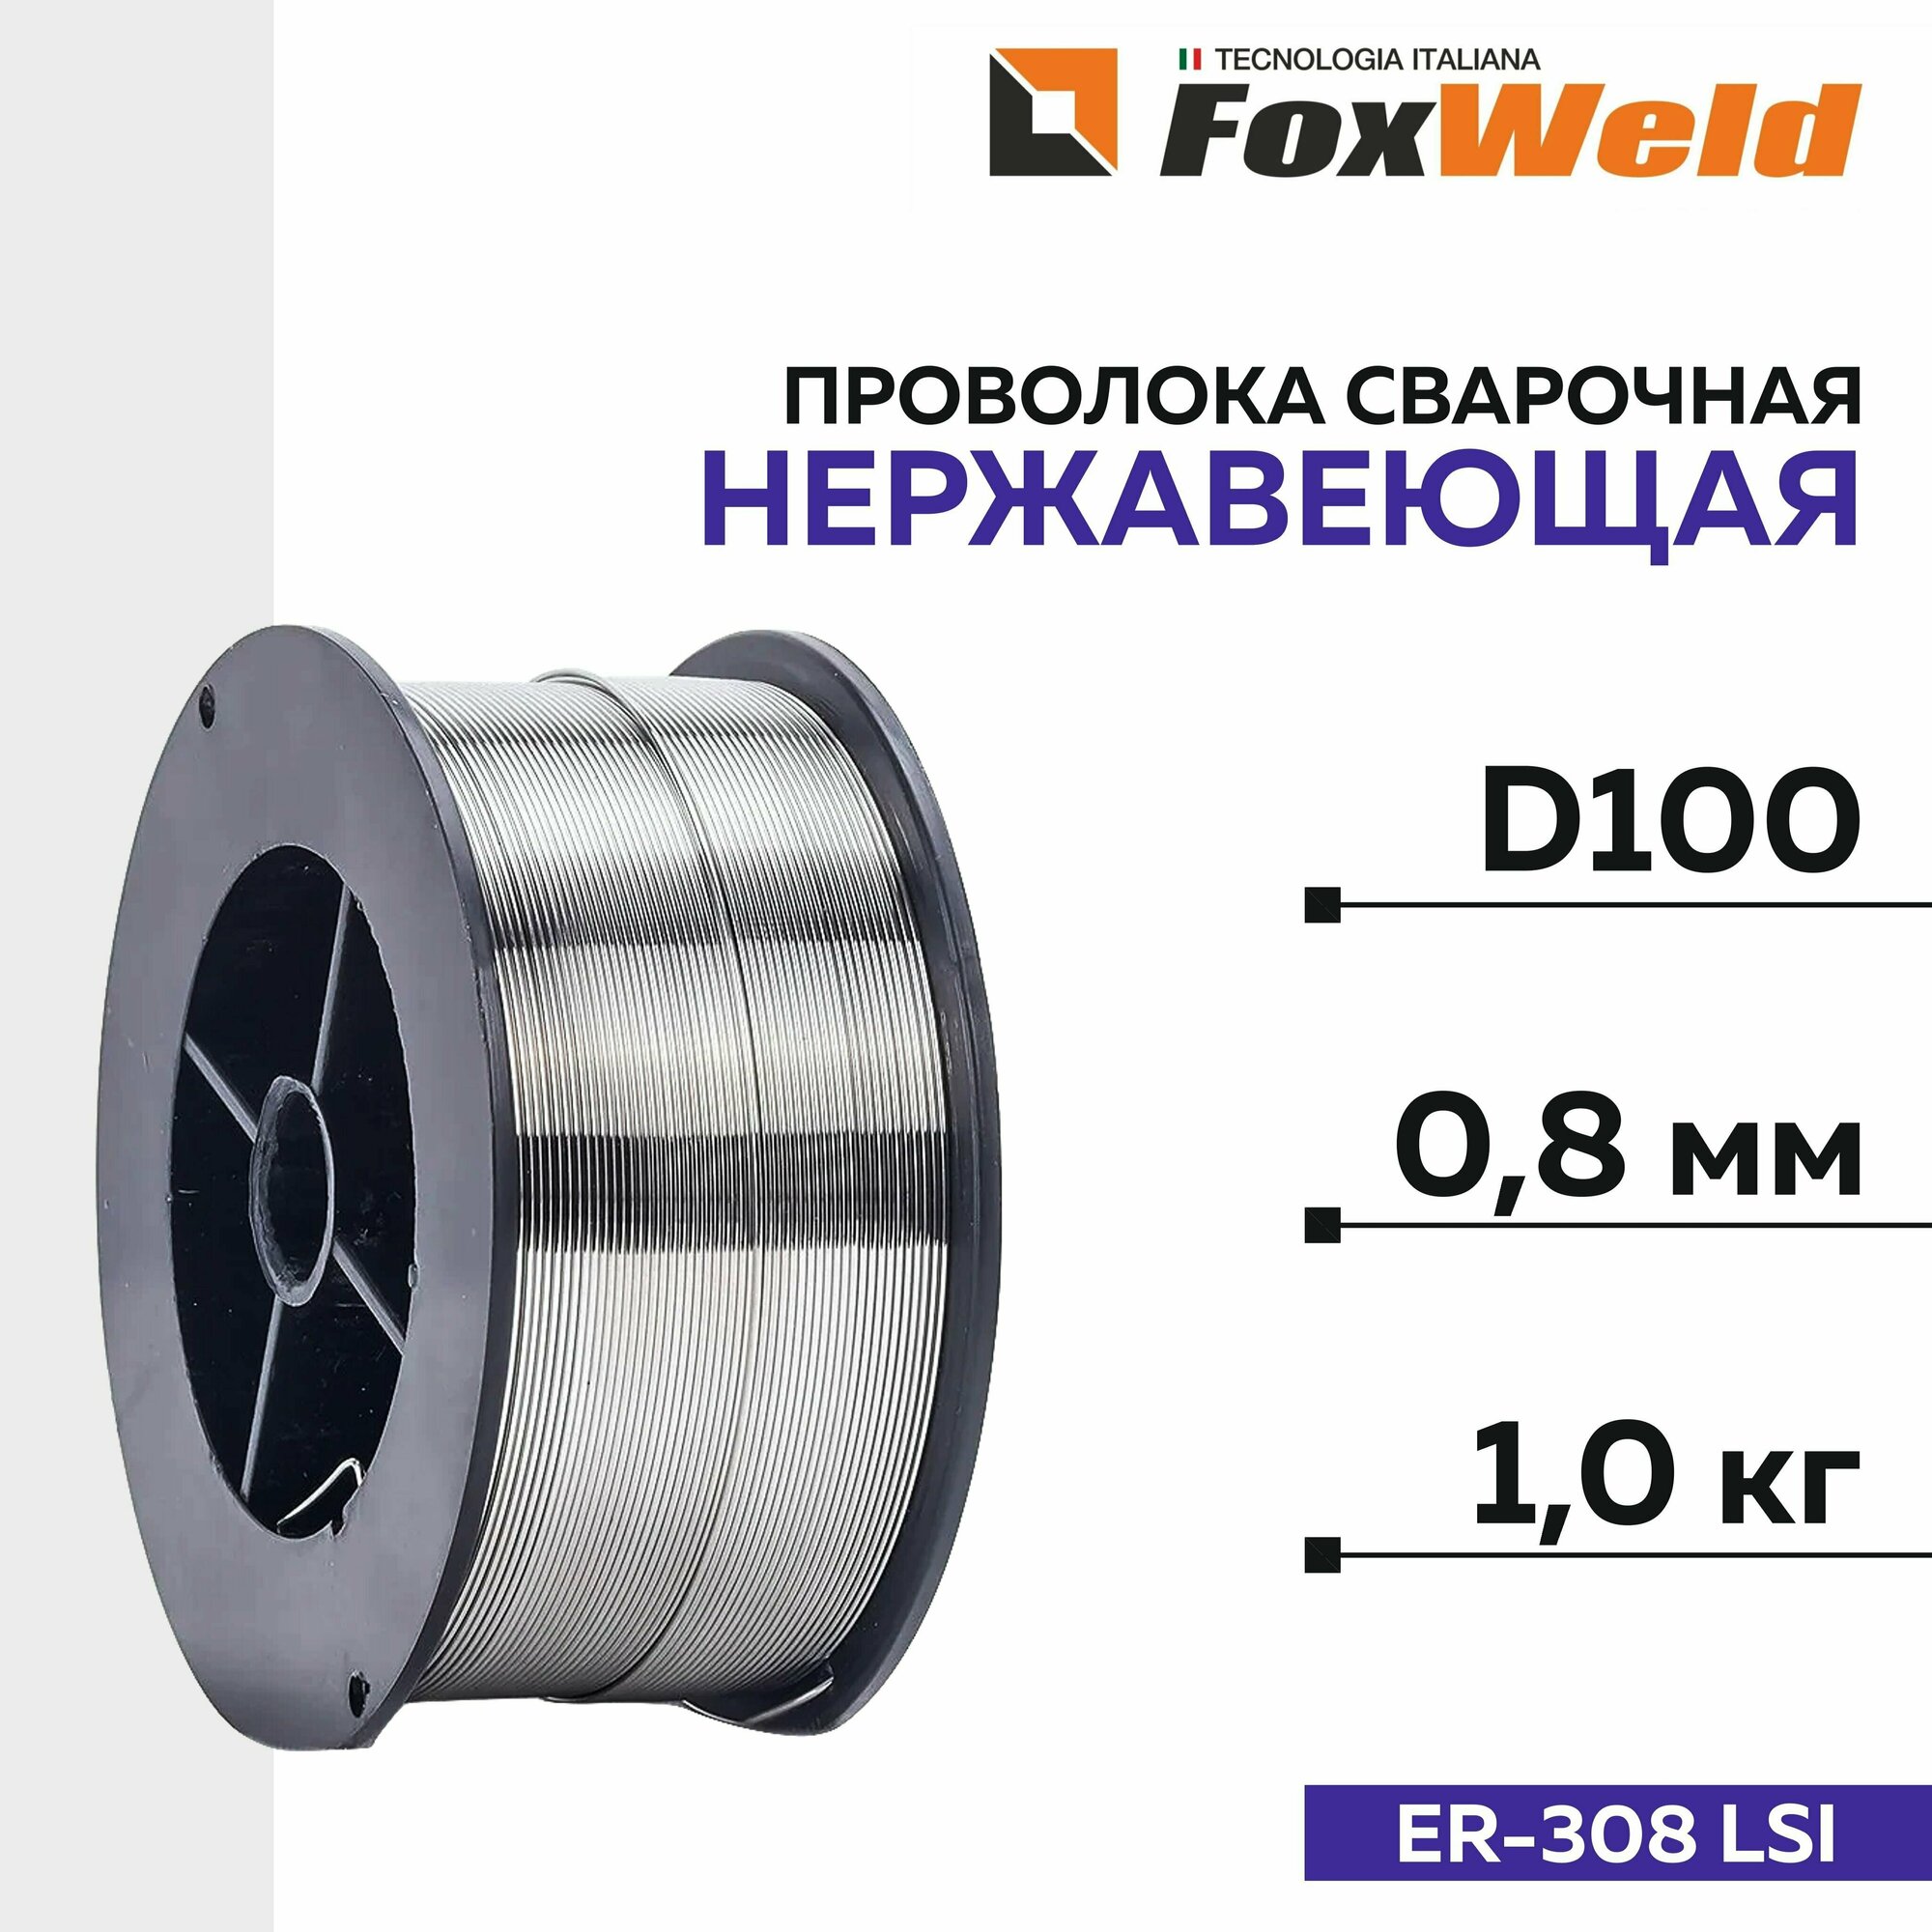 Проволока сварочная нержавеющая FoxWeld D-100 ER-308 LSI д. 08 мм; 1 кг